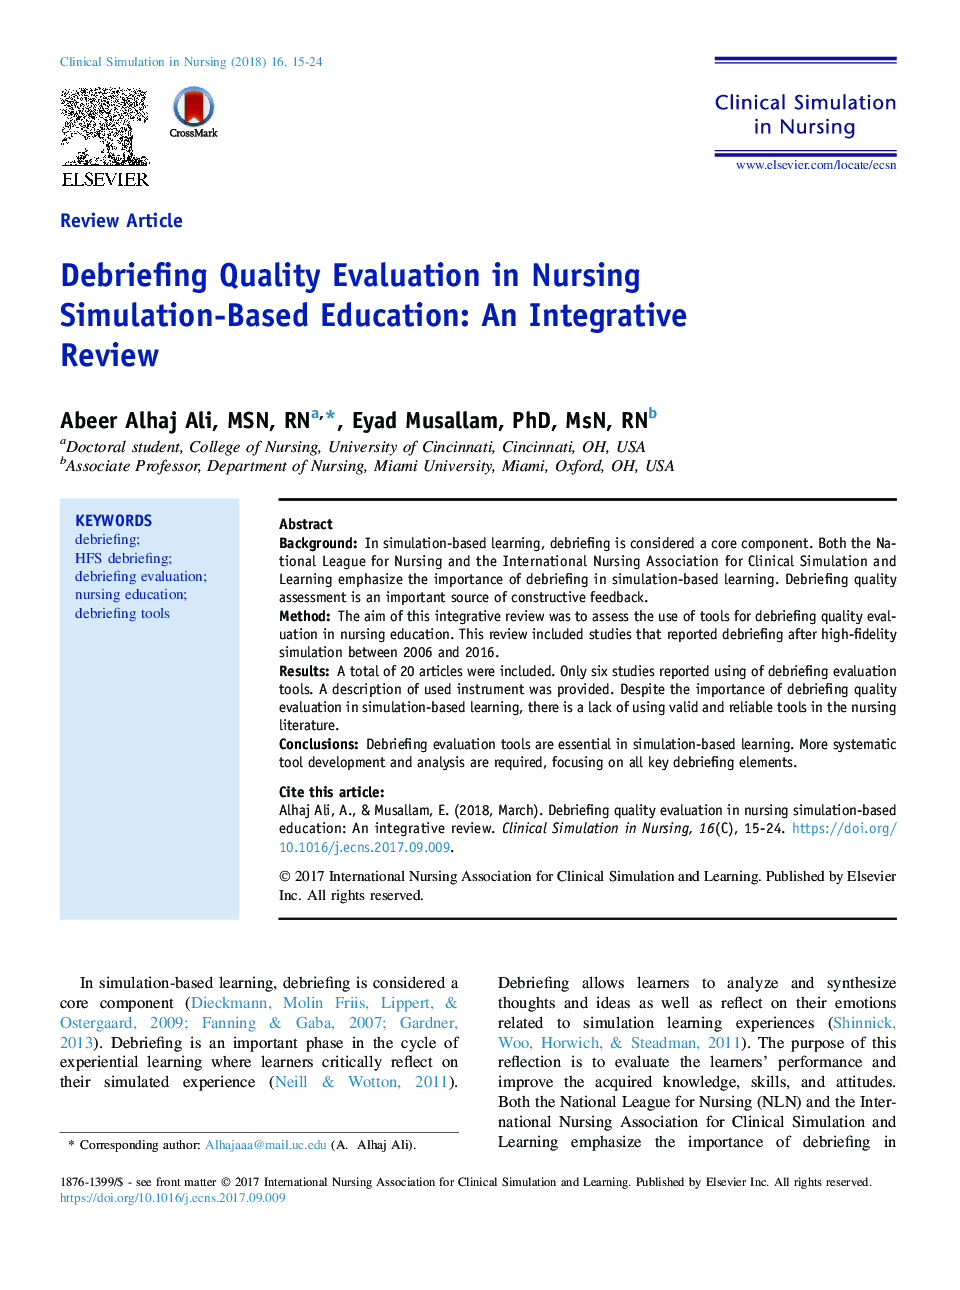 ارزیابی کیفیت ارزیابی در آموزش مبتنی بر شبیه سازی پرستاری: یک مرور جامع 